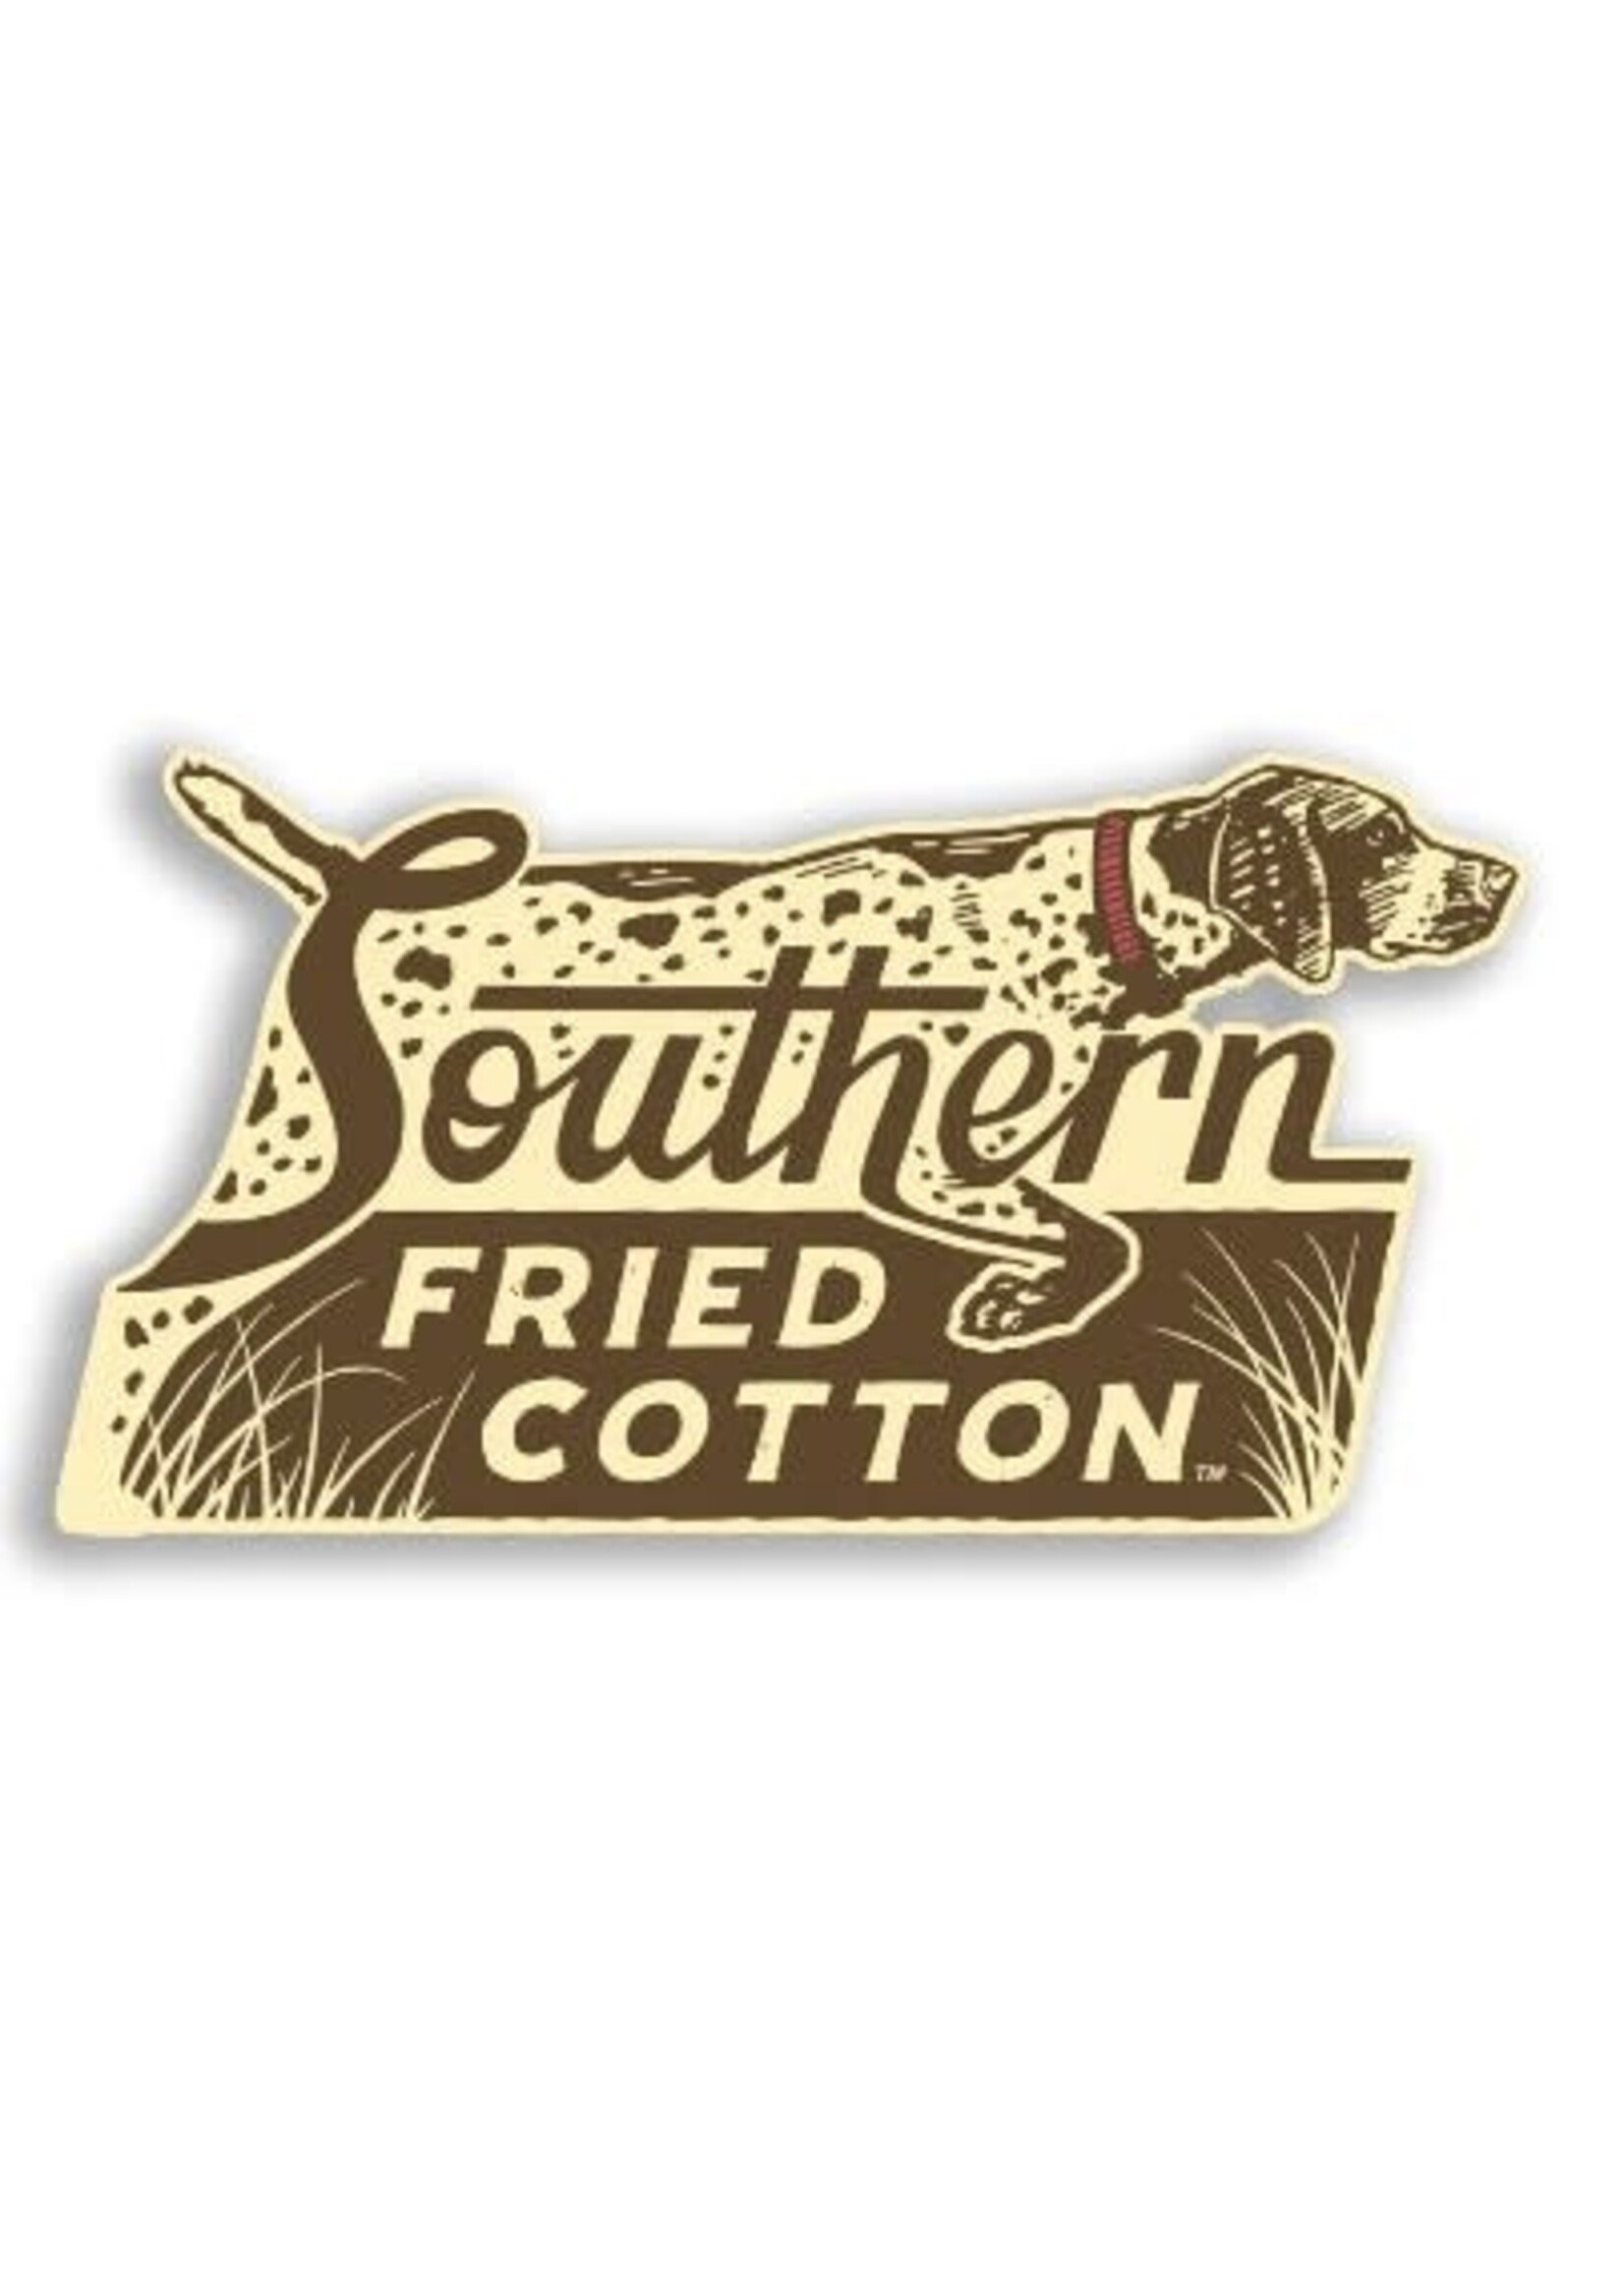 Southern Fried Cotton Southern Fried Cotton Decal